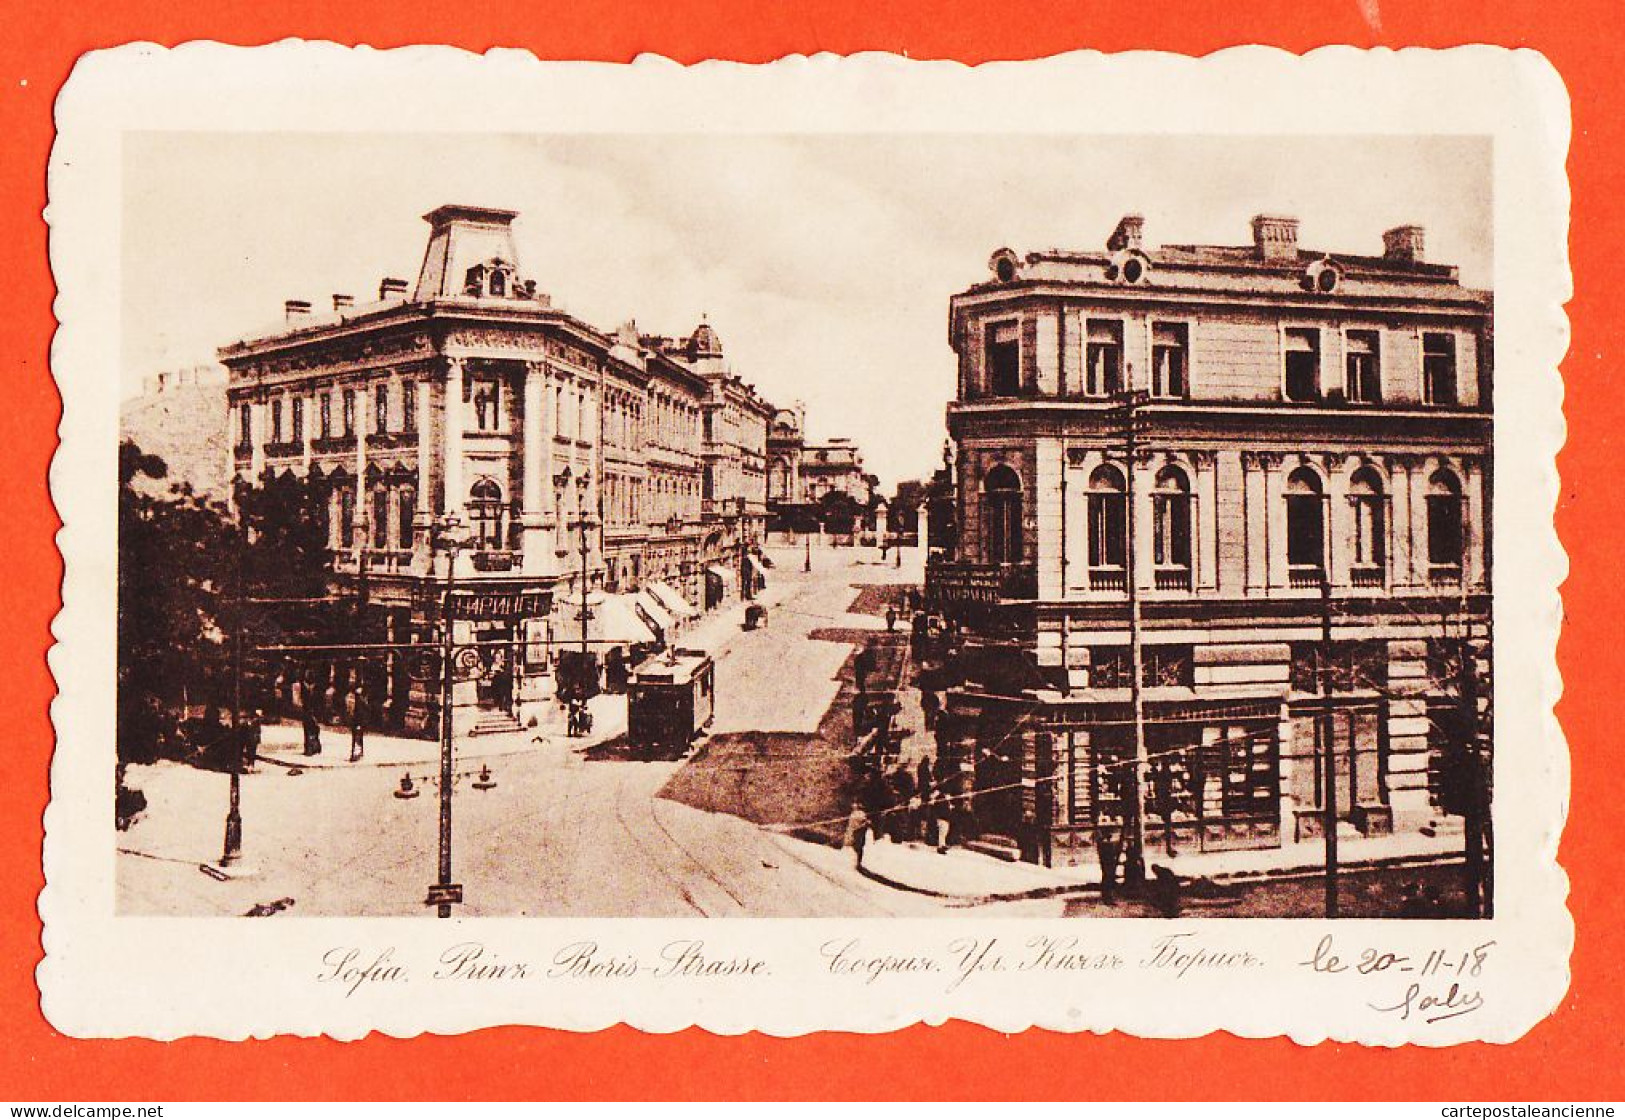 06490 / SOFIA Guerre 1914 Lisez 20-11-1918 PRINZ BORIS-Strasse Strasse à Gabriel REY Réalmont - Bulgaria